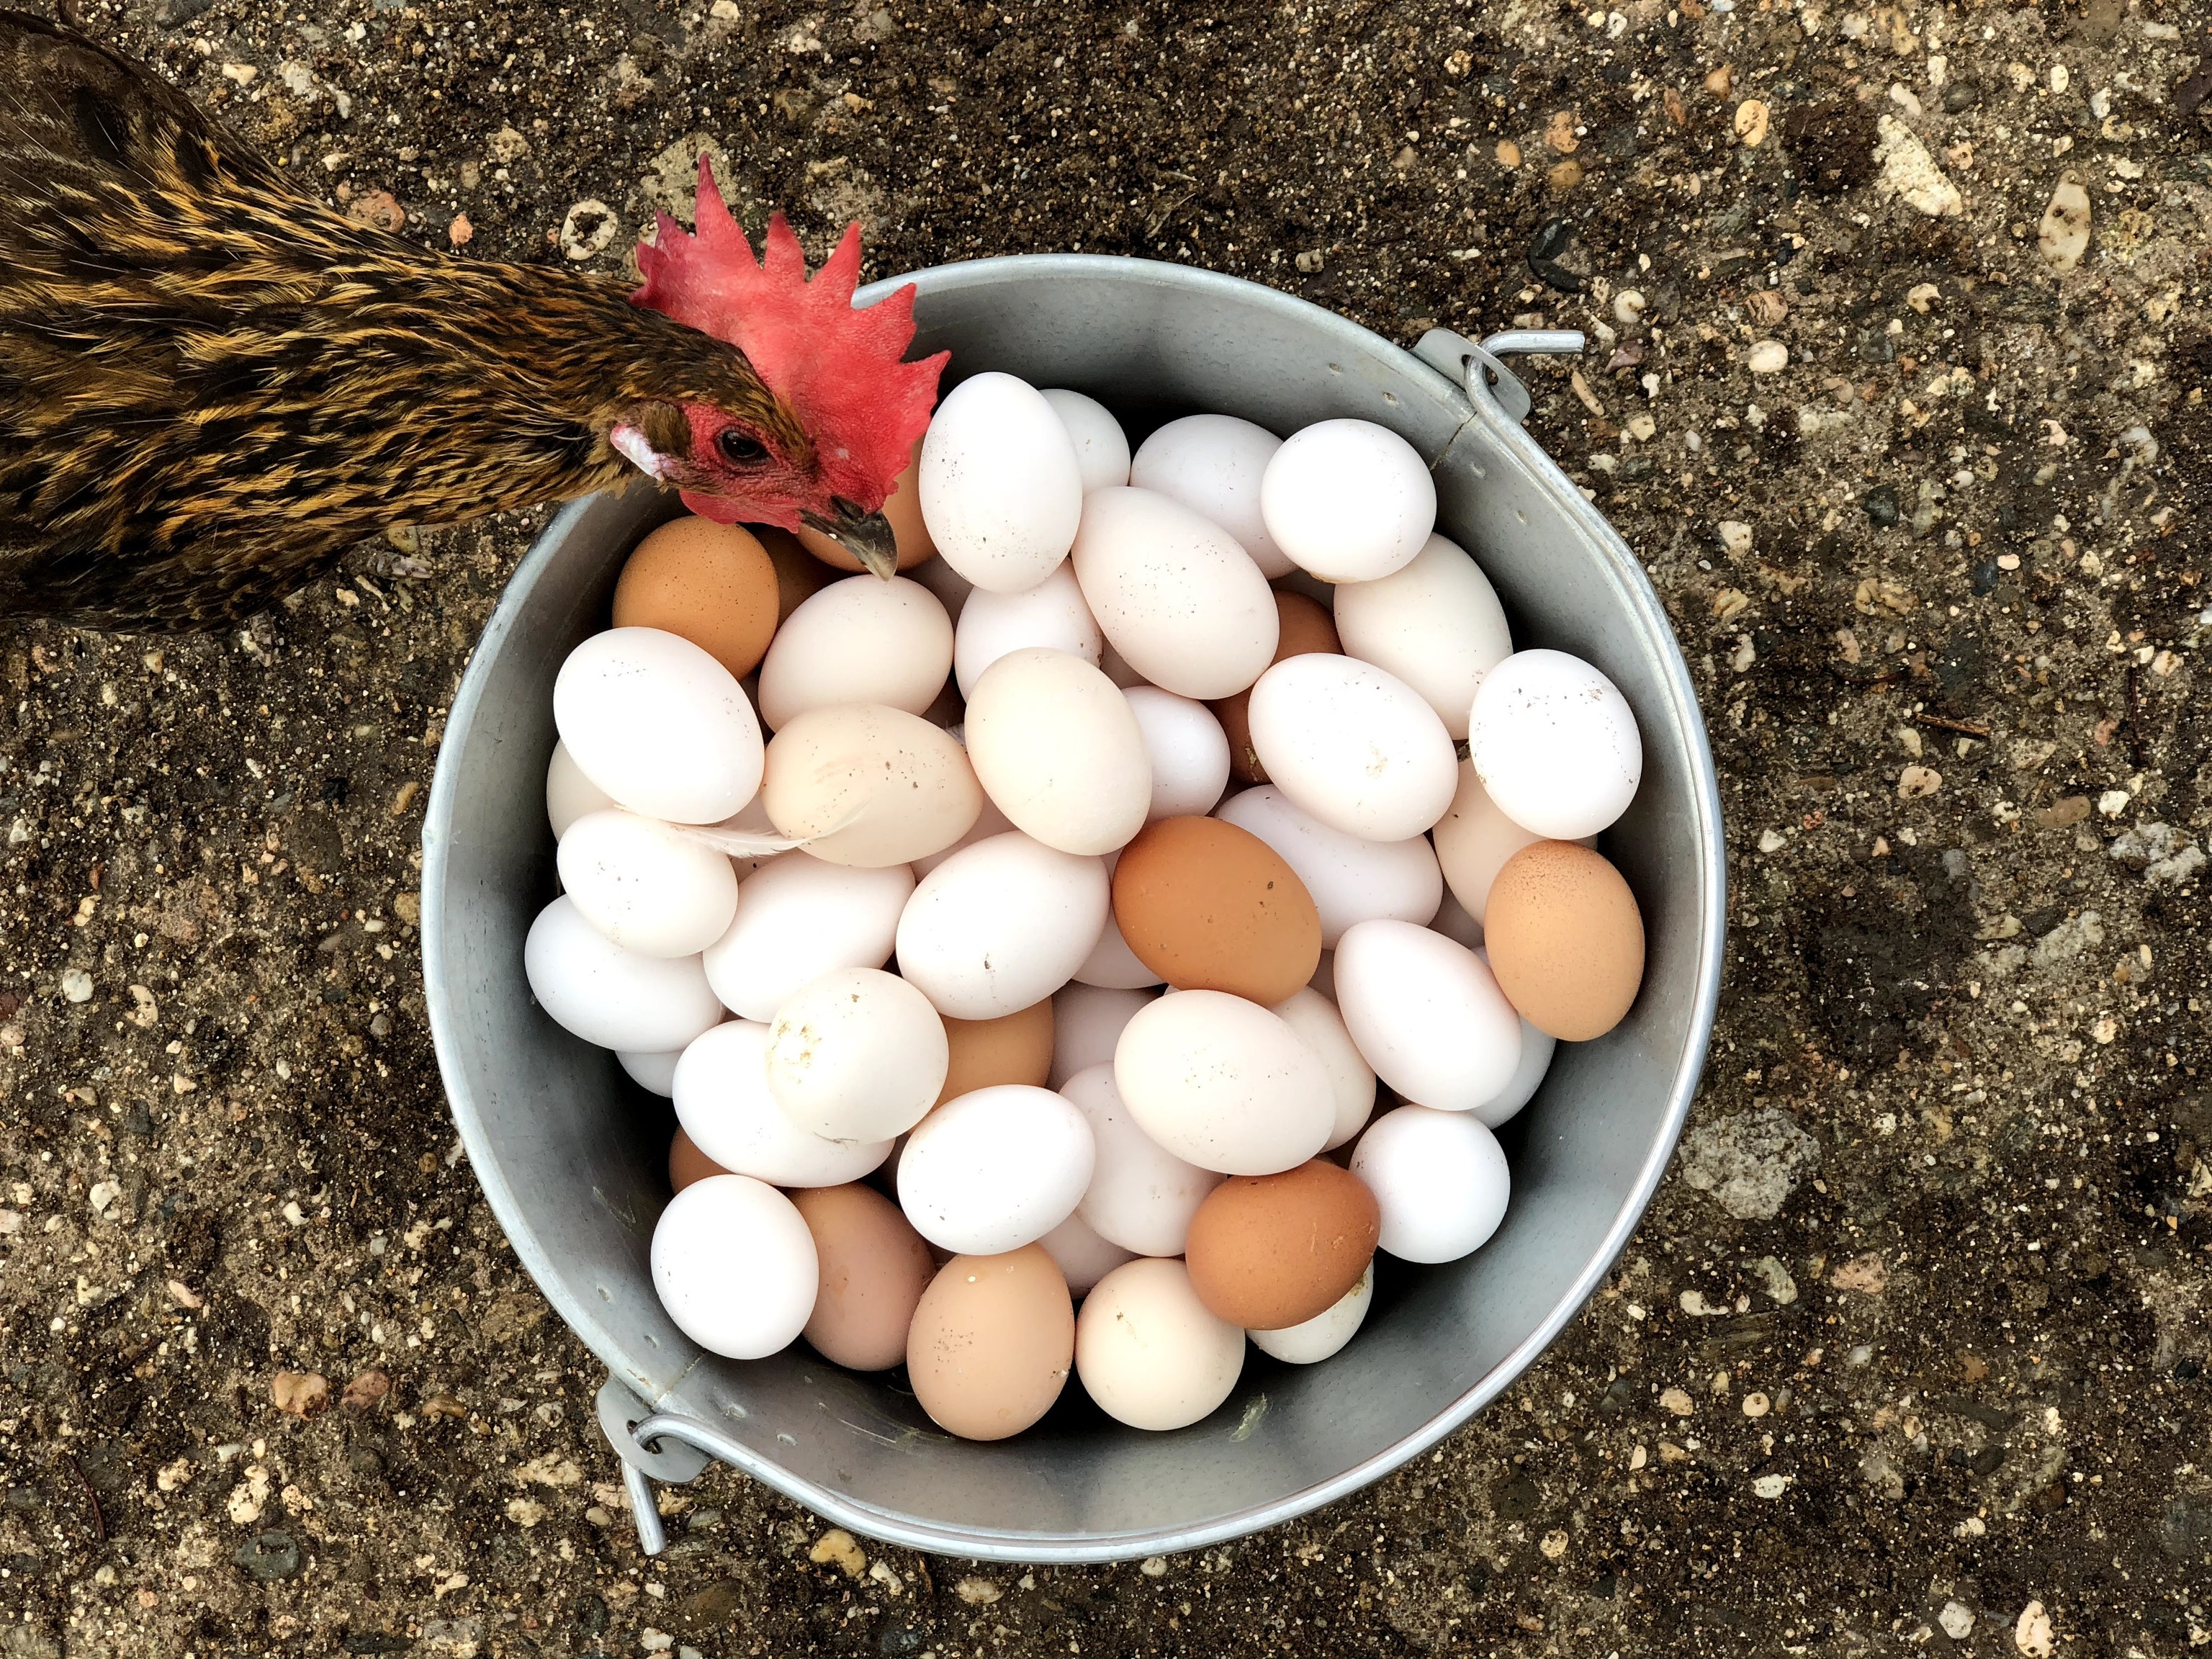 Los huevos rotos se usan como compost.